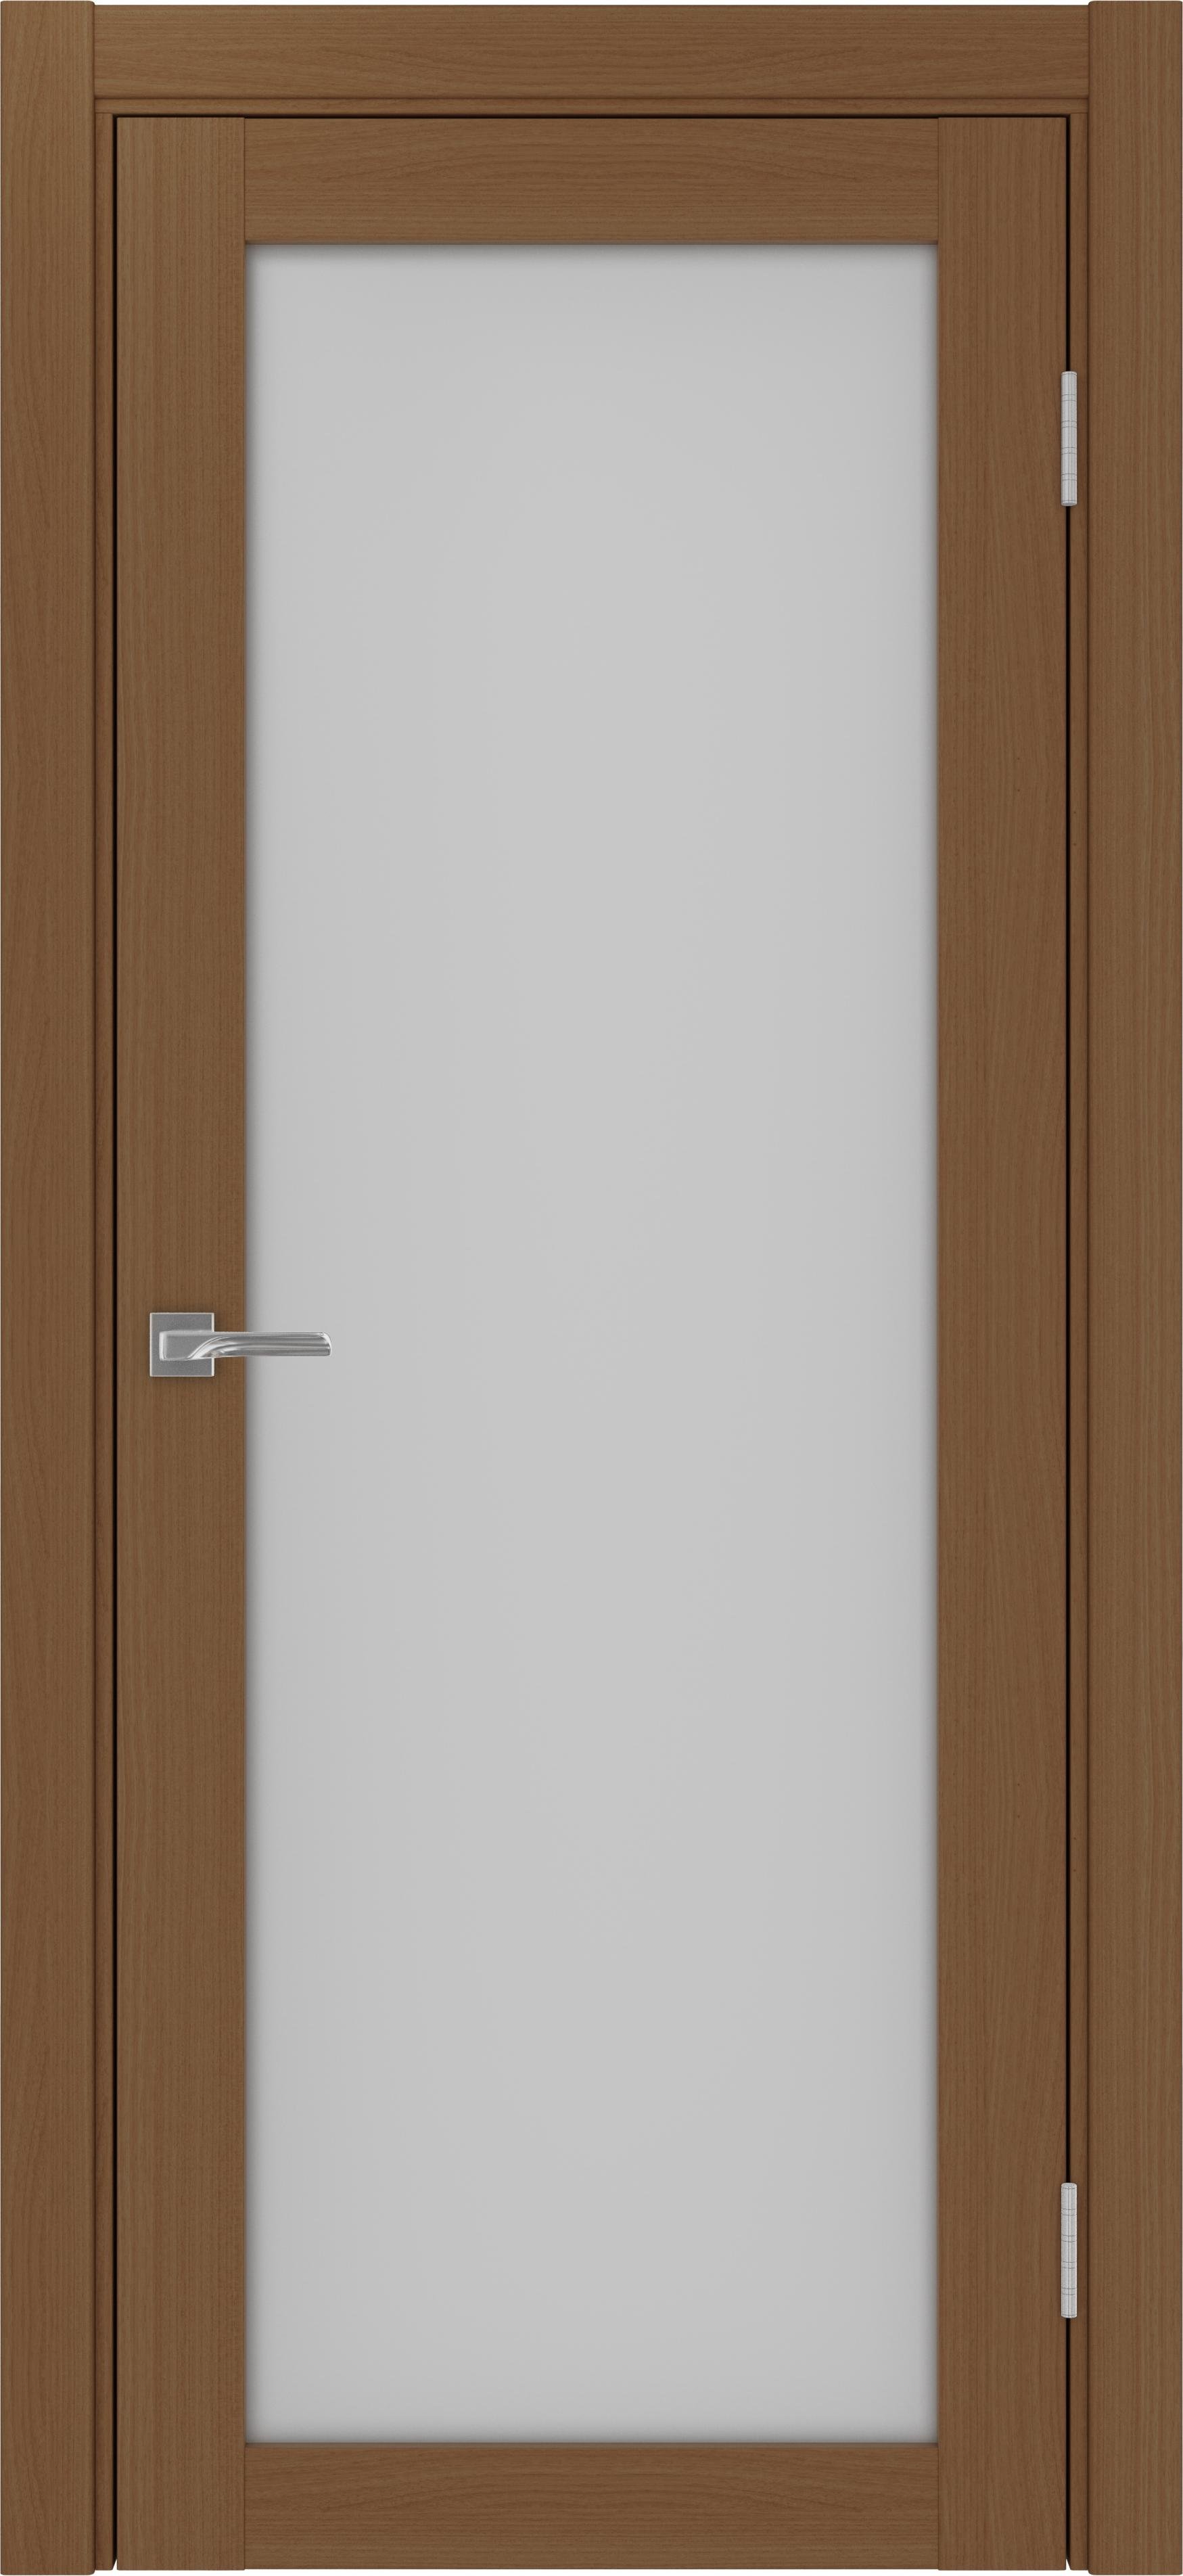 Межкомнатная дверь «Турин 501.2 Орех» стекло сатин